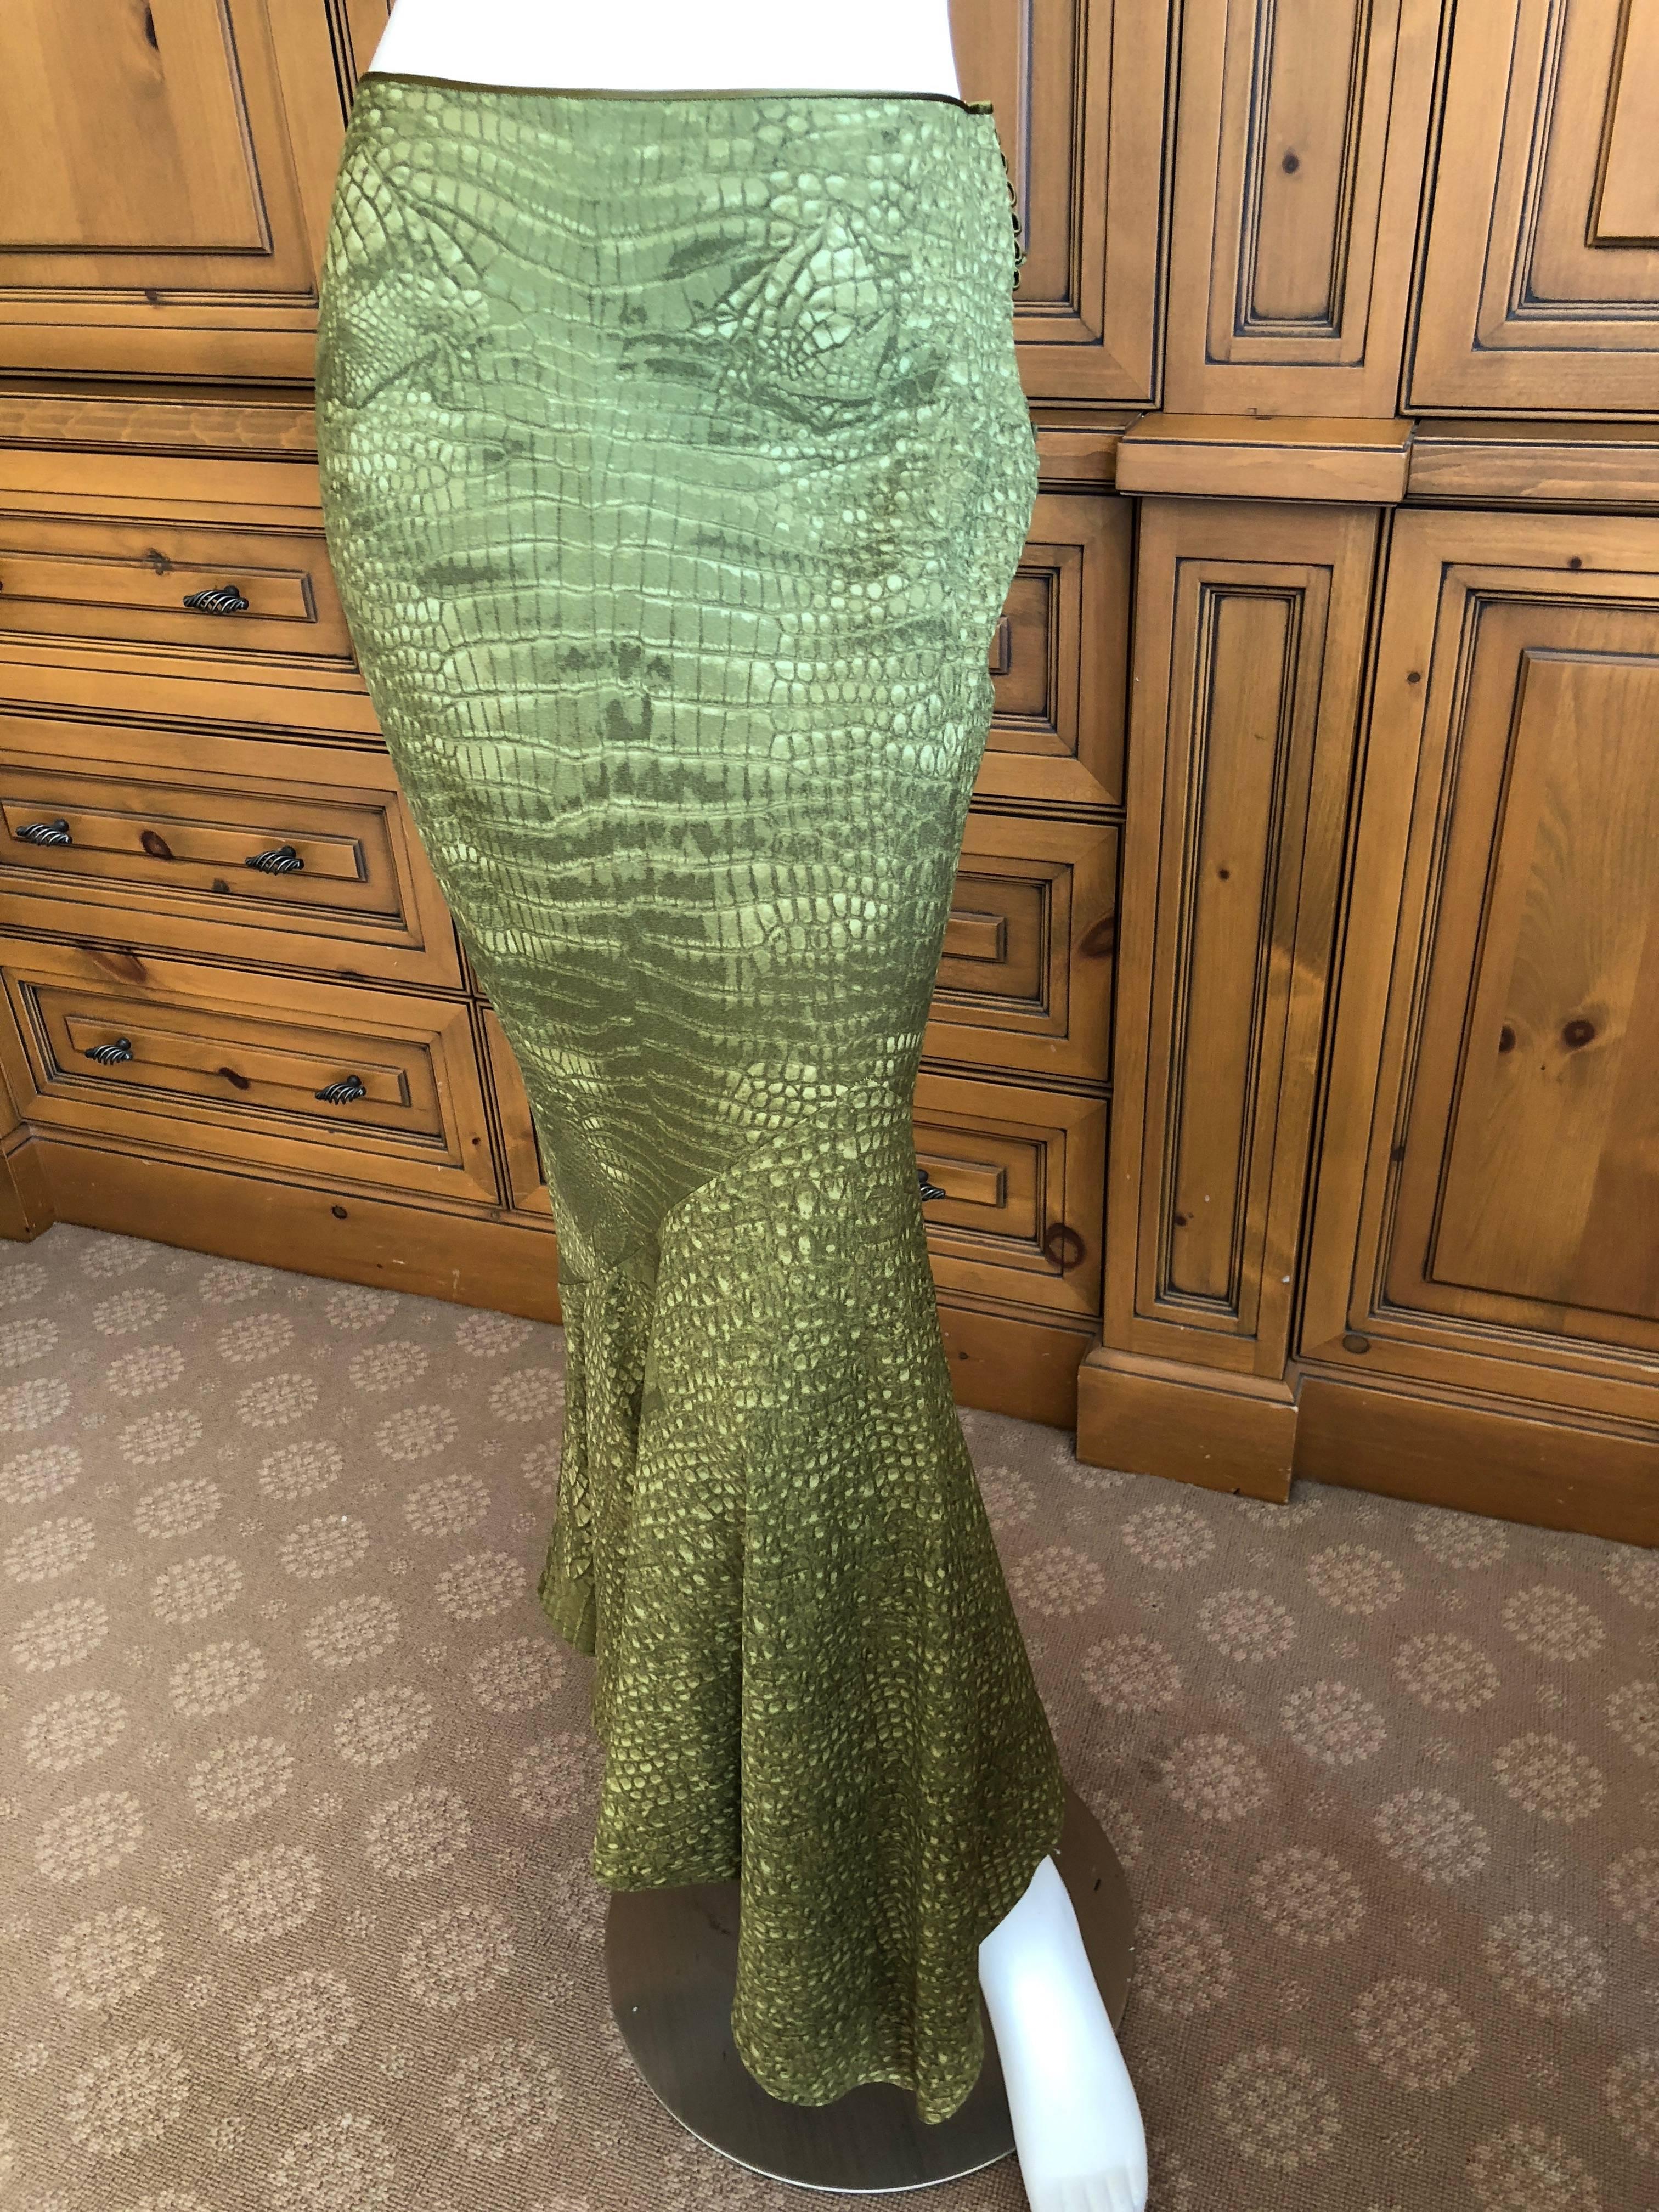 John Galliano Vintage Silk Green Alligator Print Fishtail Skirt.
Size 42
Waist 29